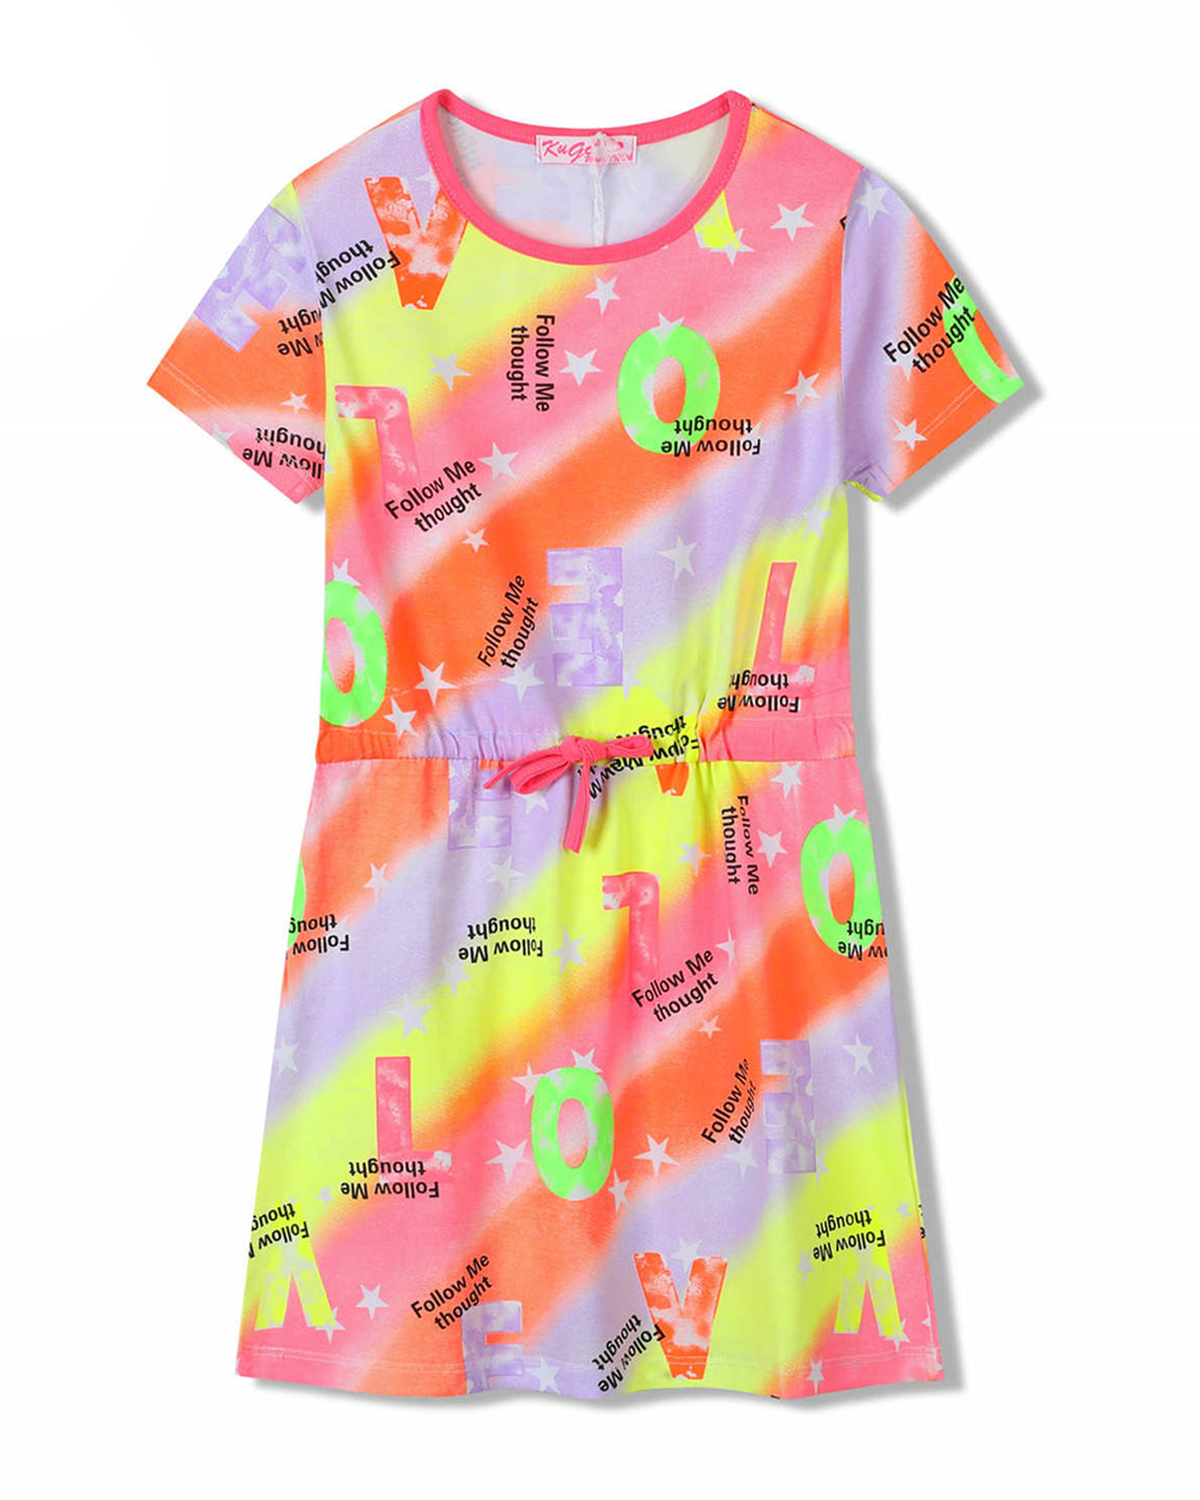 Dívčí šaty - KUGO SH3518, mix barev / růžový lem Barva: Mix barev, Velikost: 128